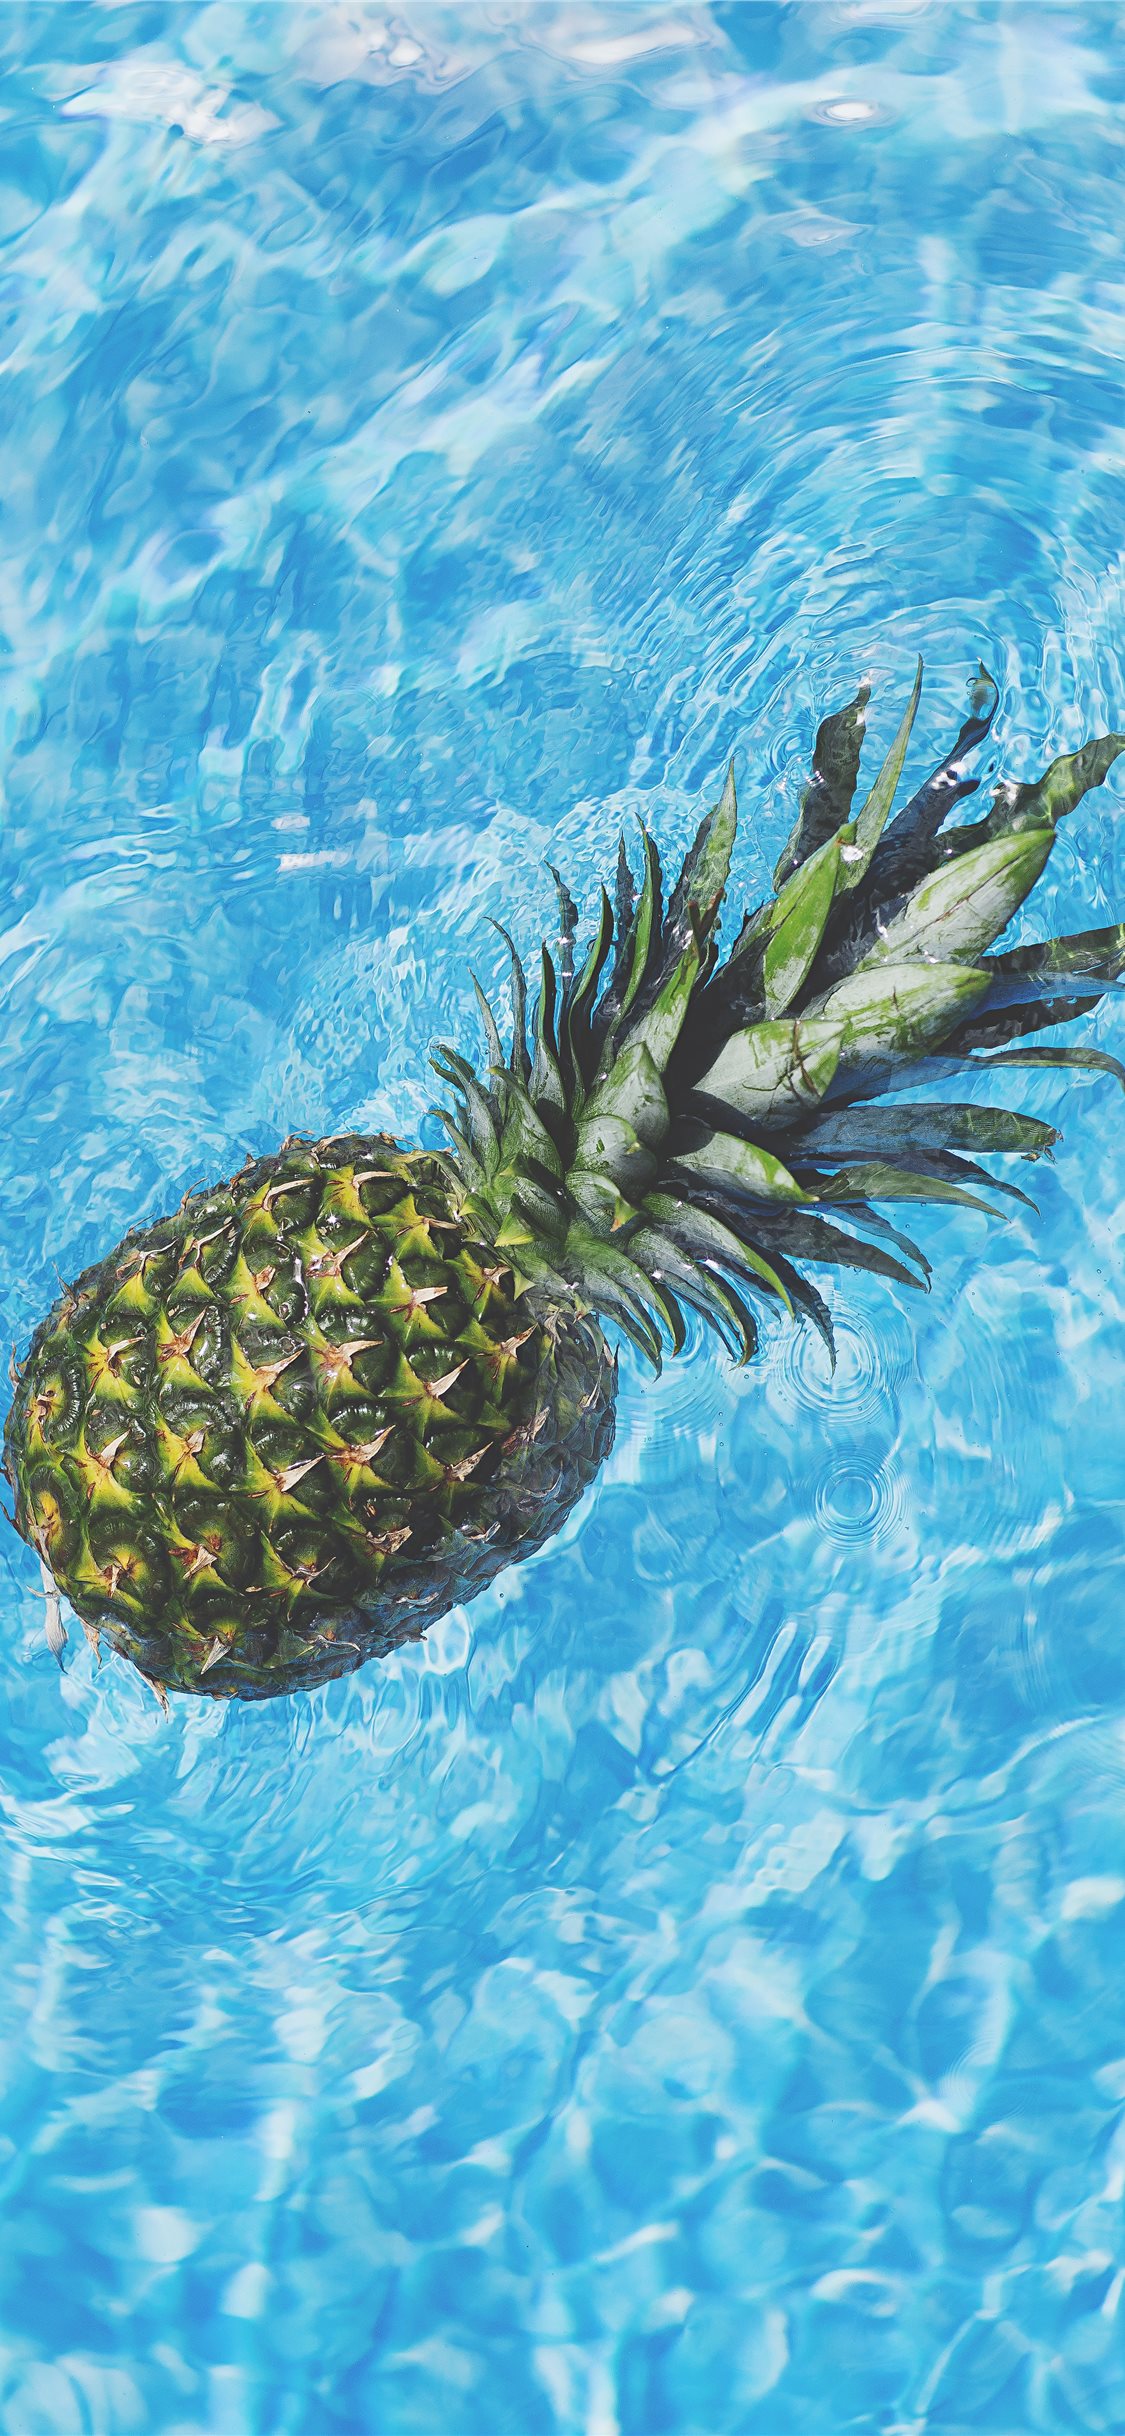 Free download Cute Pineapple Backgrounds HD  PixelsTalkNet